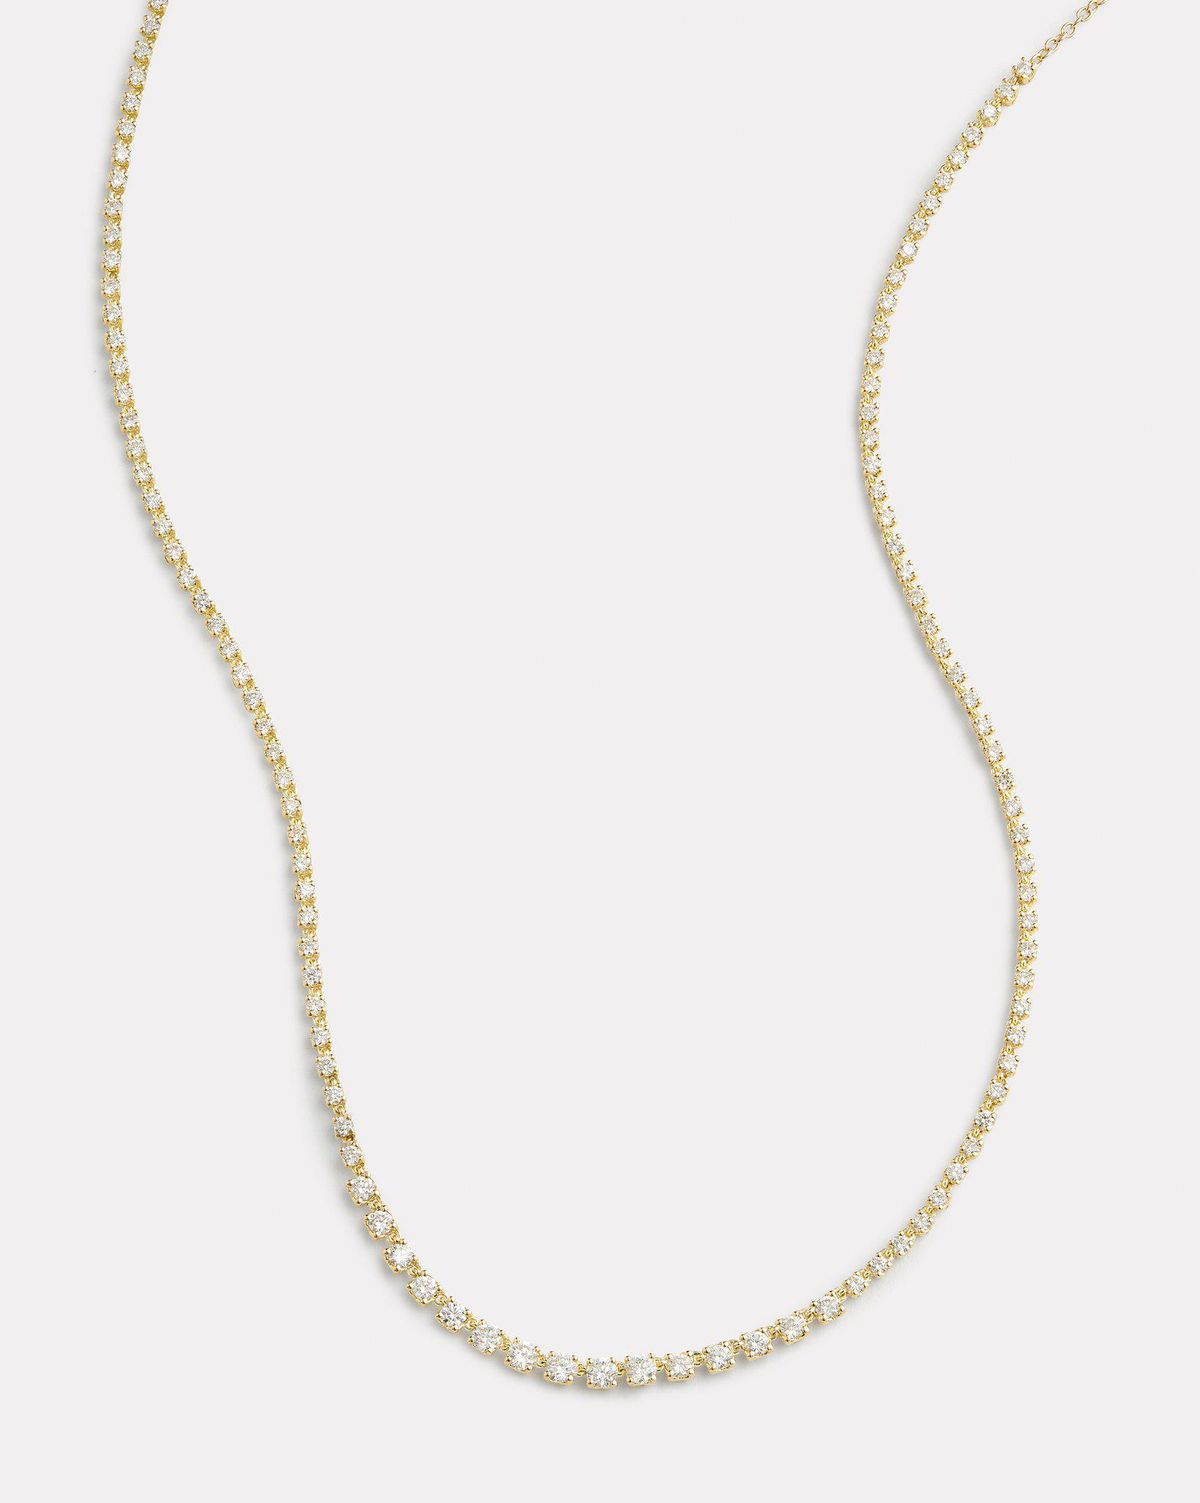 Petite Graduate Signature Set Diamond Necklace